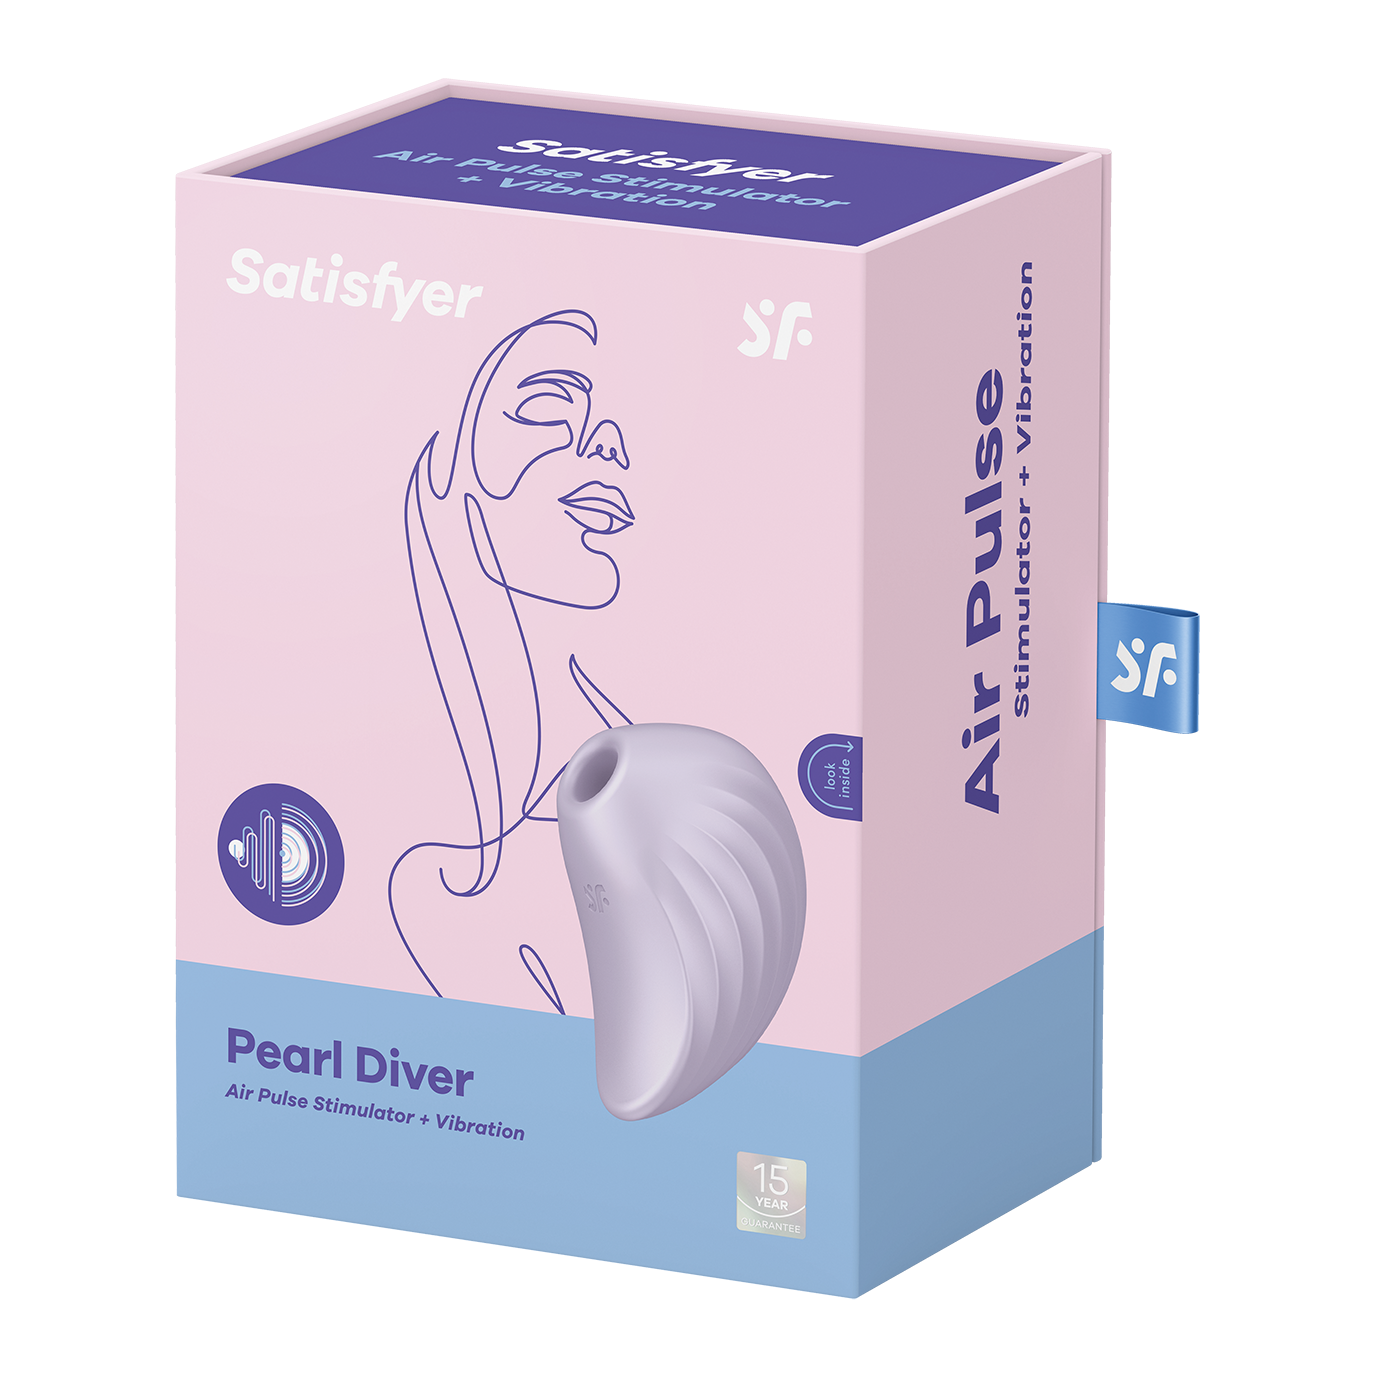 Pearl Diver Satisfyer вакуумно-волновой стимулятор клитора + вибрация